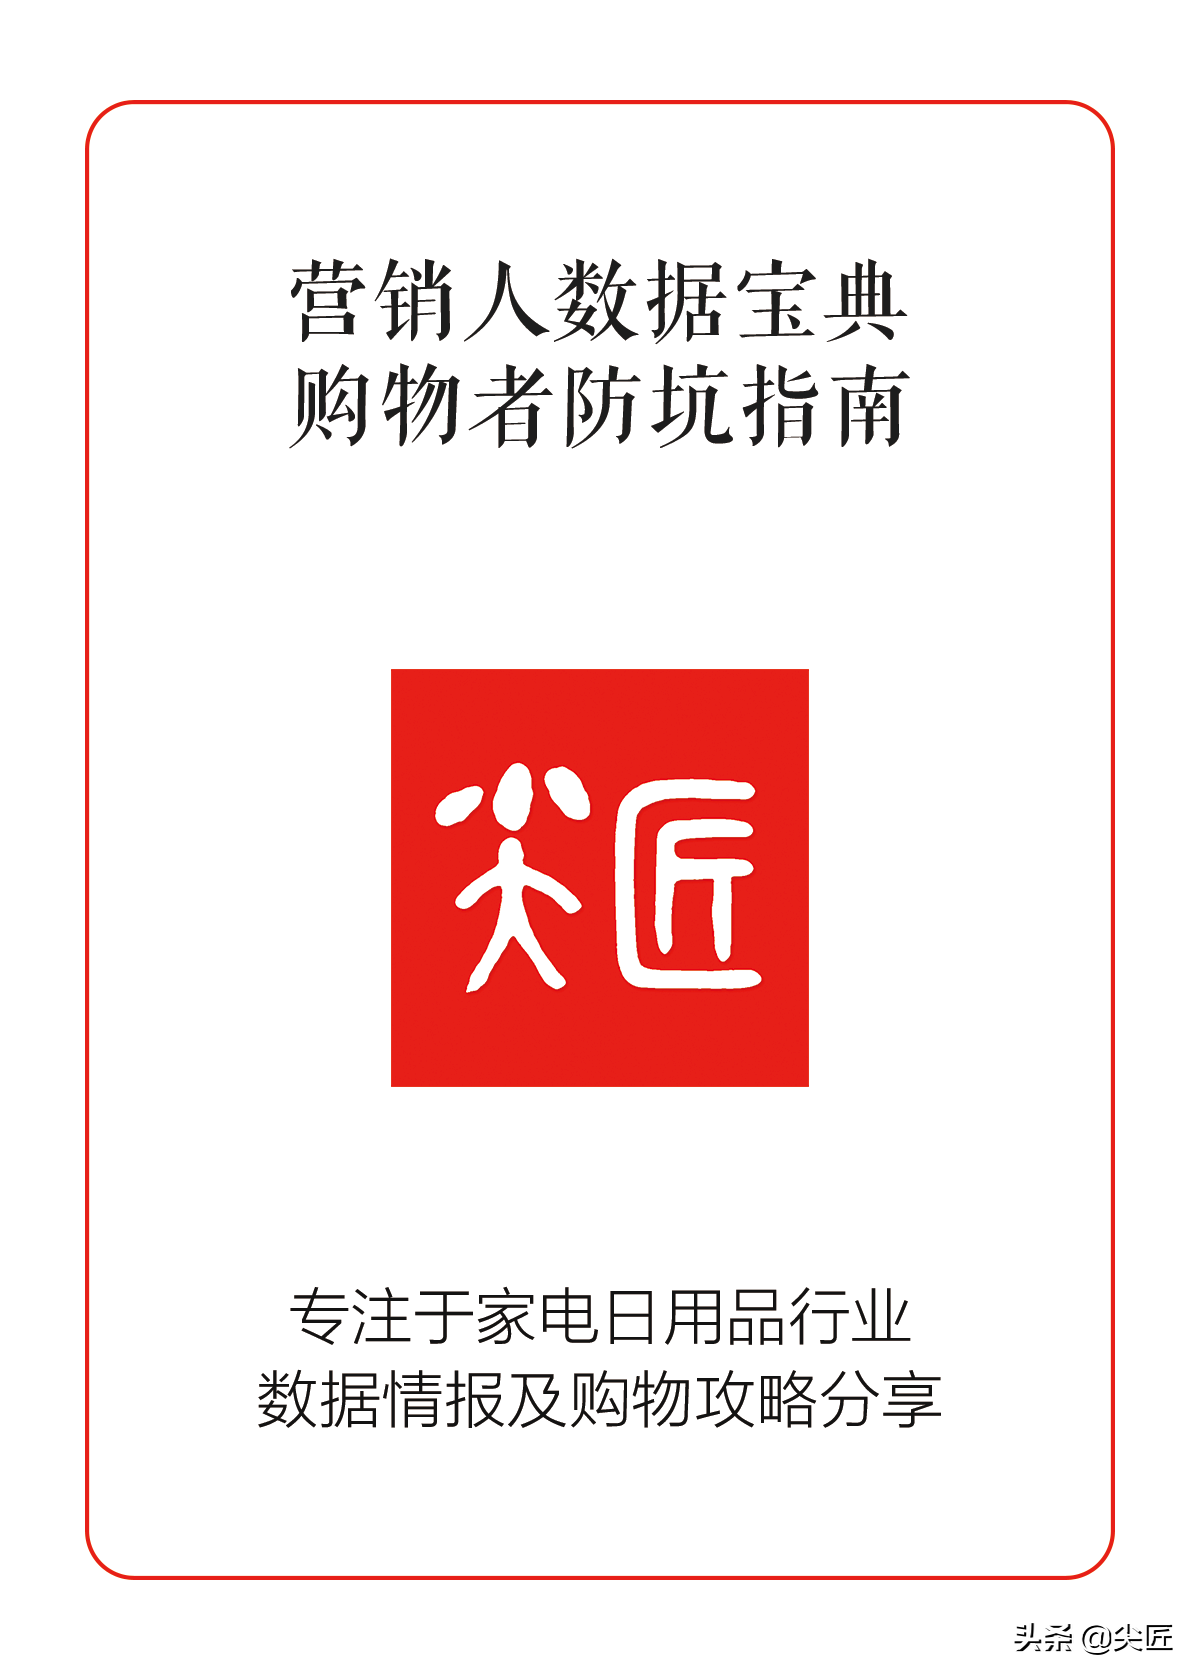 电暖器品牌,中国十大电暖器品牌